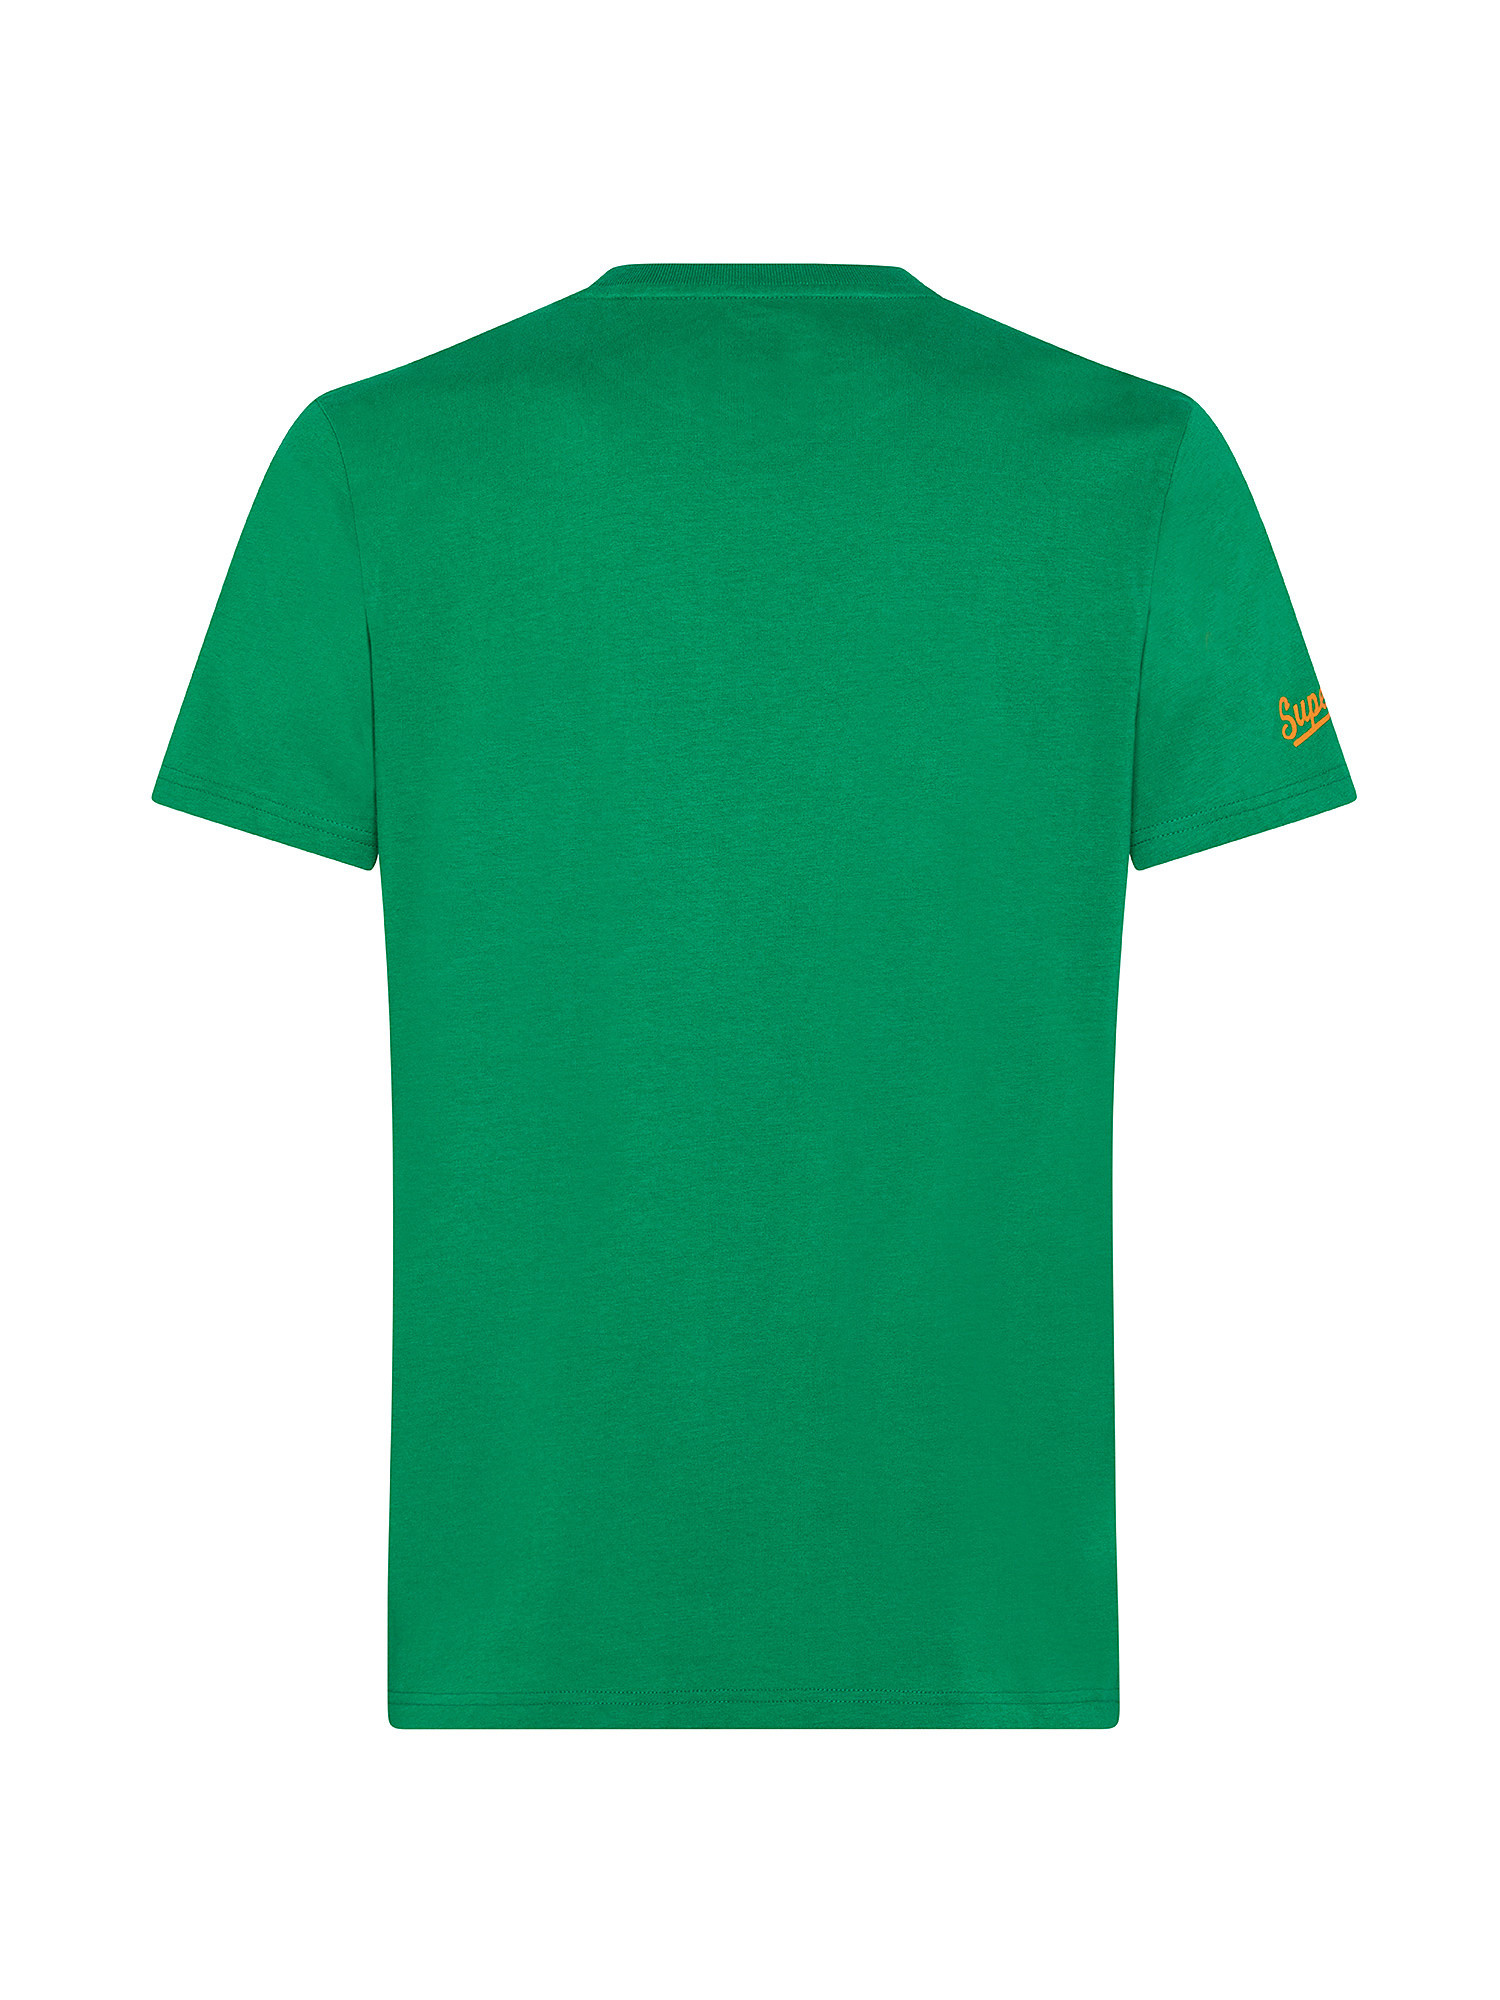 Vintage Athletic t-Shirt, Verde, large image number 1